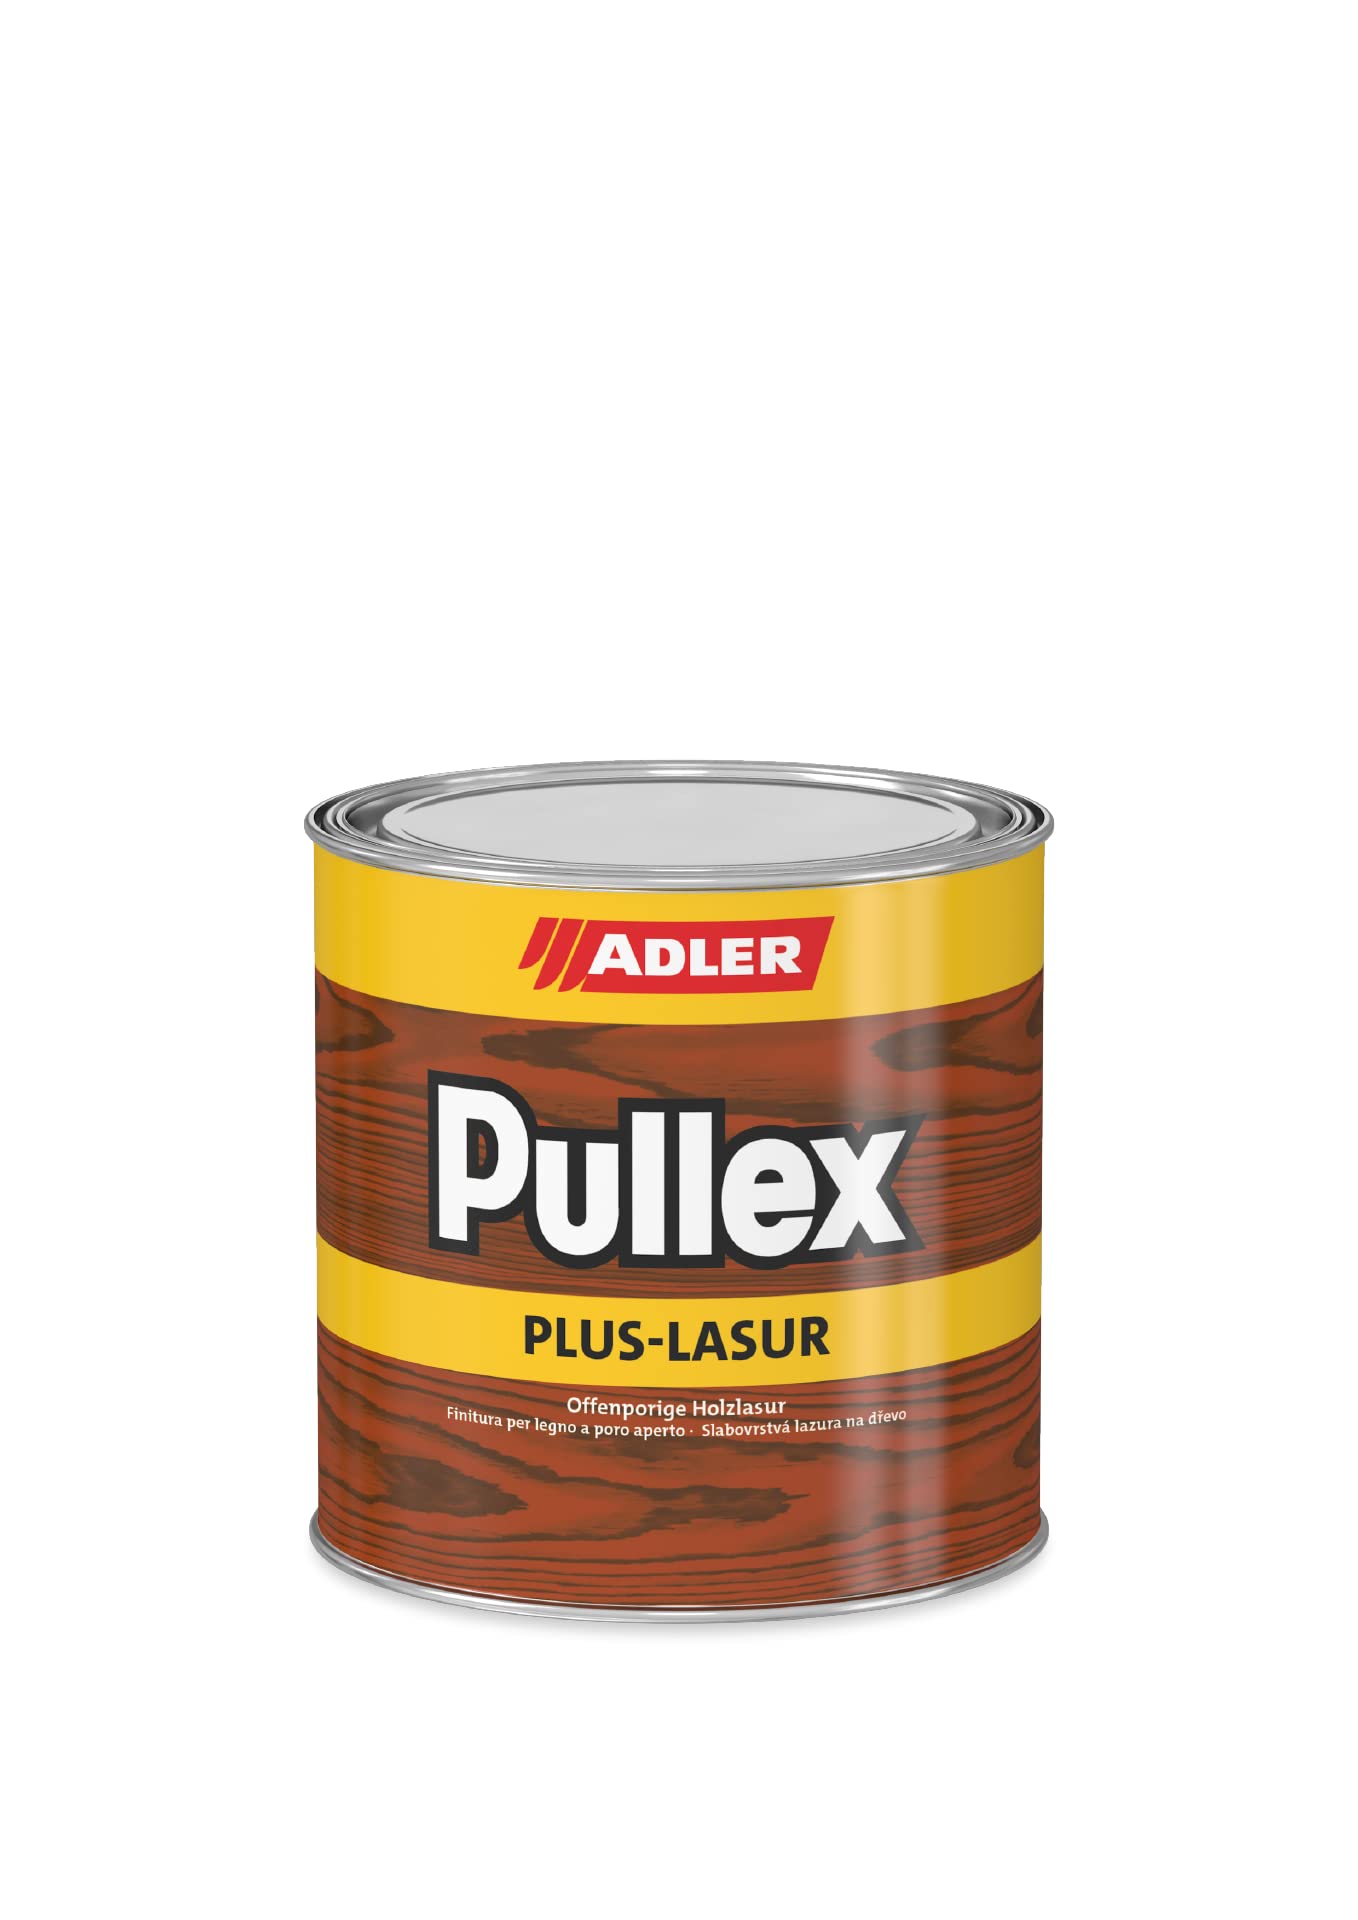 ADLER Pullex Plus-Lasur - Holzlasur Außen Farblos - Universell einsetzbare & aromatenfreie Holzschutzlasur als perfekter UV- & Wetterschutz - 5 l Wenge/Braun